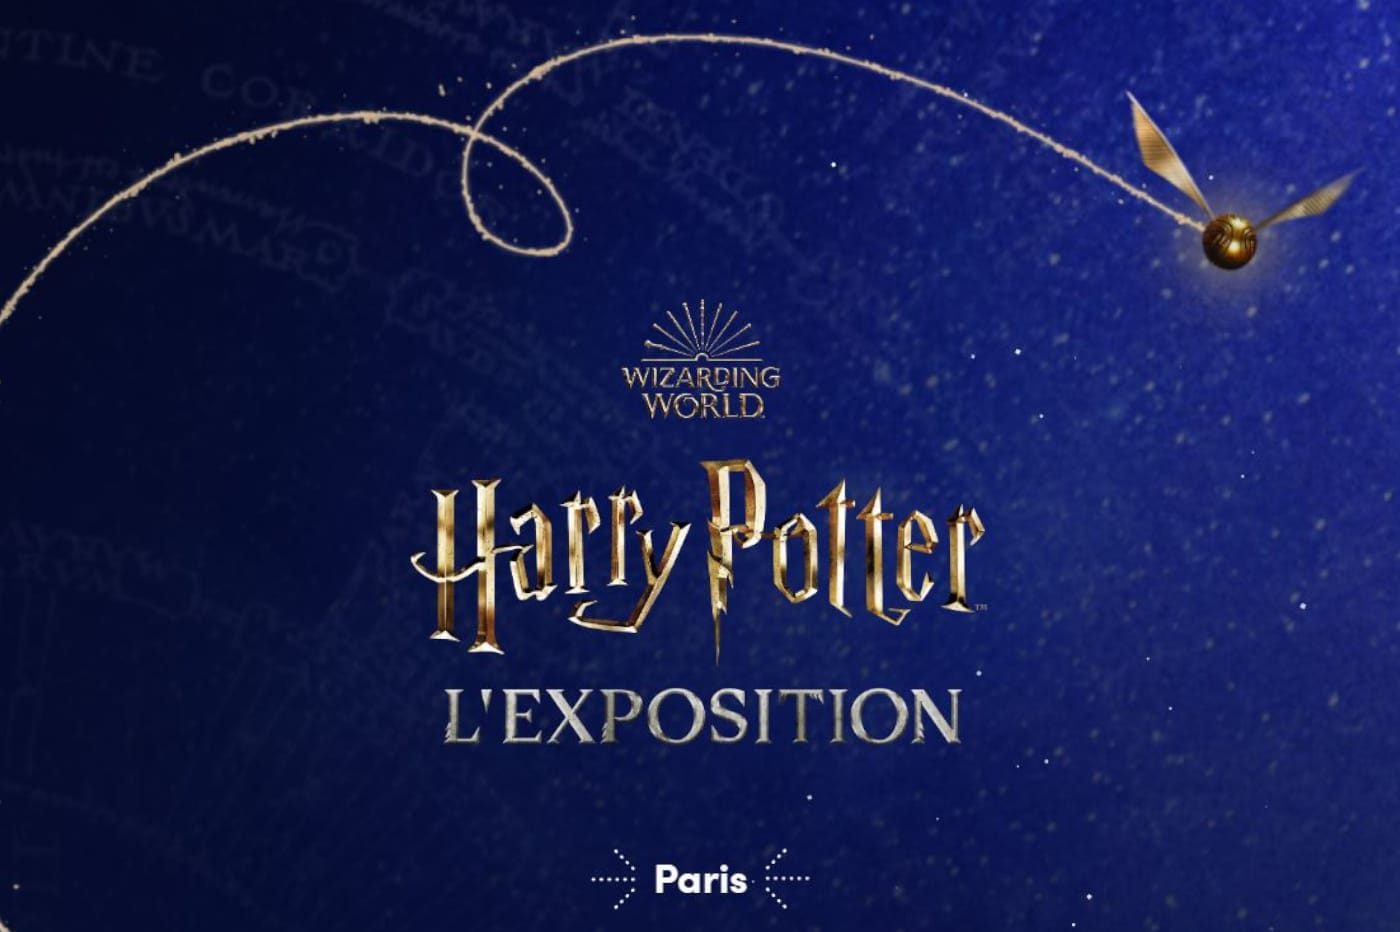 Exposition Harry Potter Paris